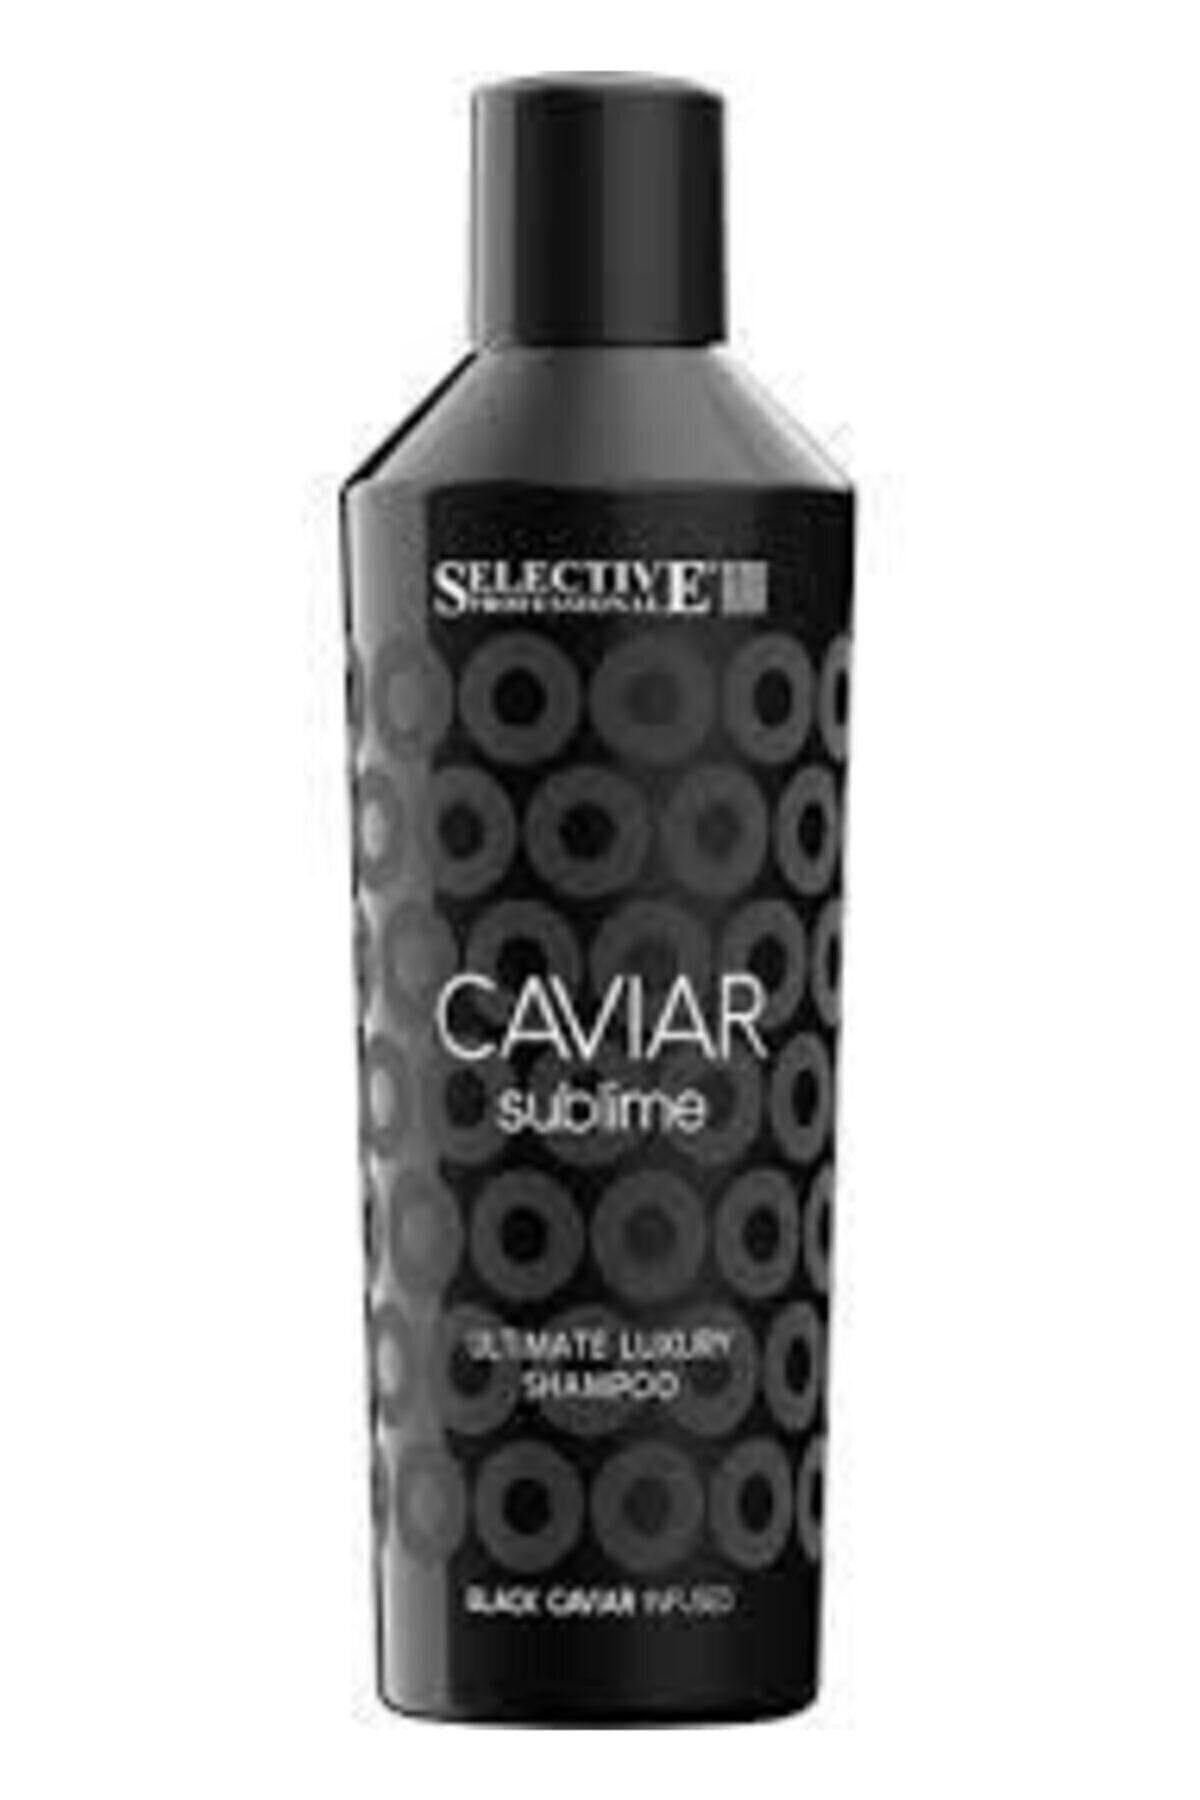 Selective Caviar Sublime Ultimate Luxury Şampuan Newonlıne.4